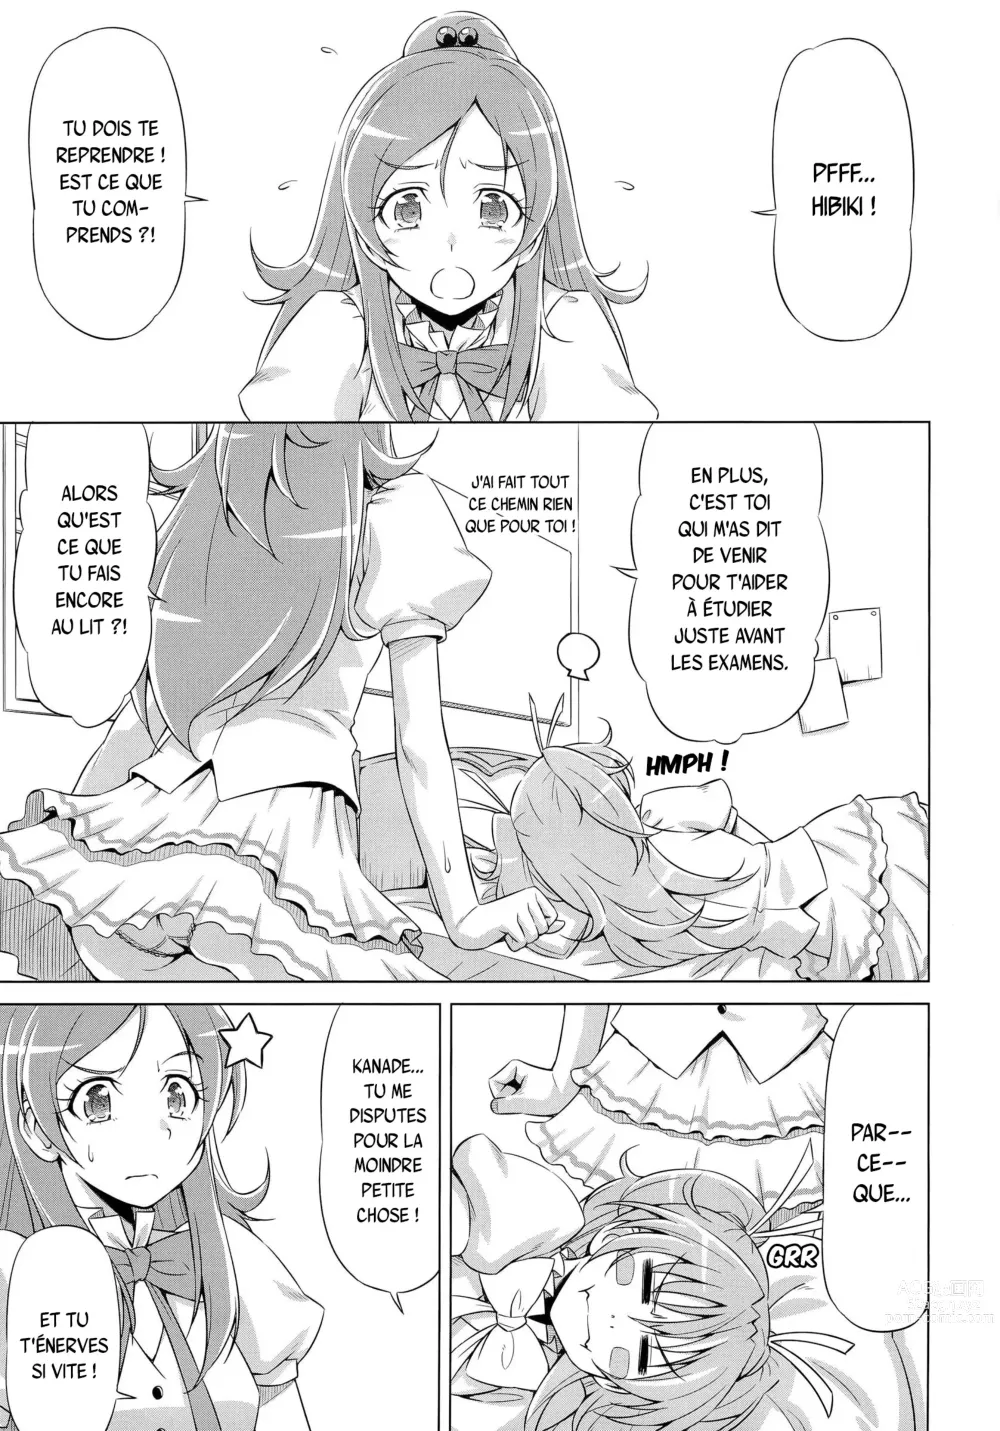 Page 4 of doujinshi Datte Hibiki ga Suki nandamon